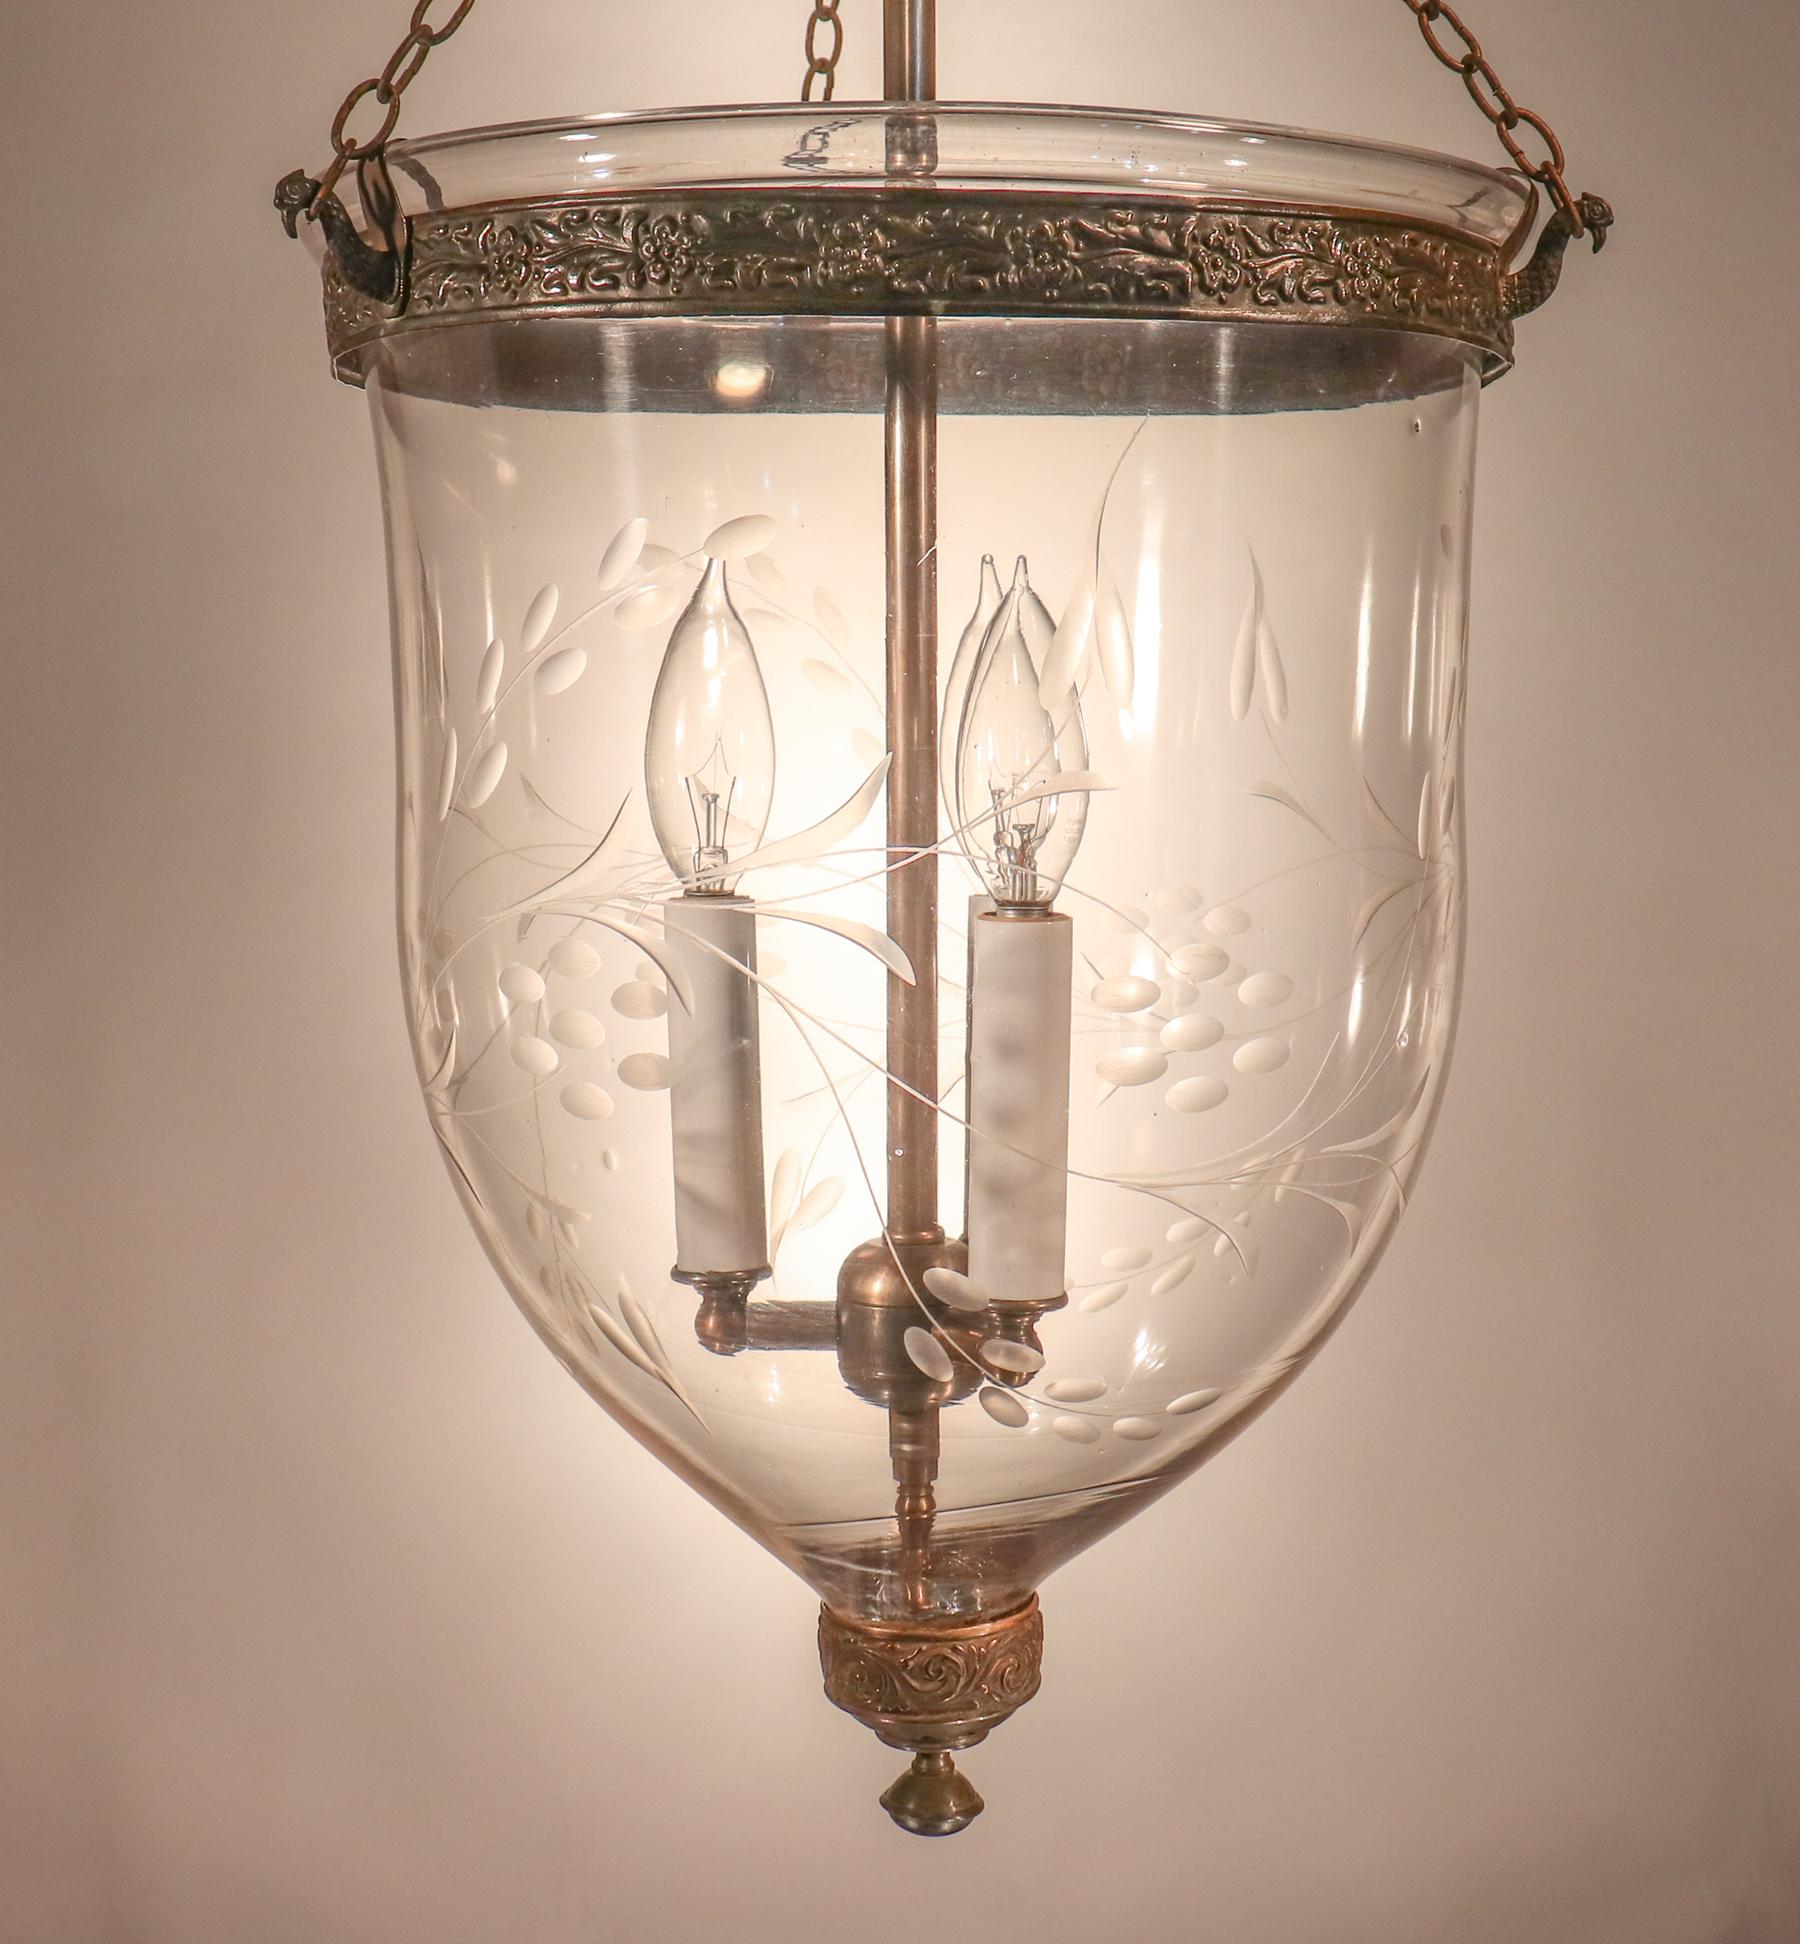 High Victorian Antique Bell Jar Lantern with Vine Etching